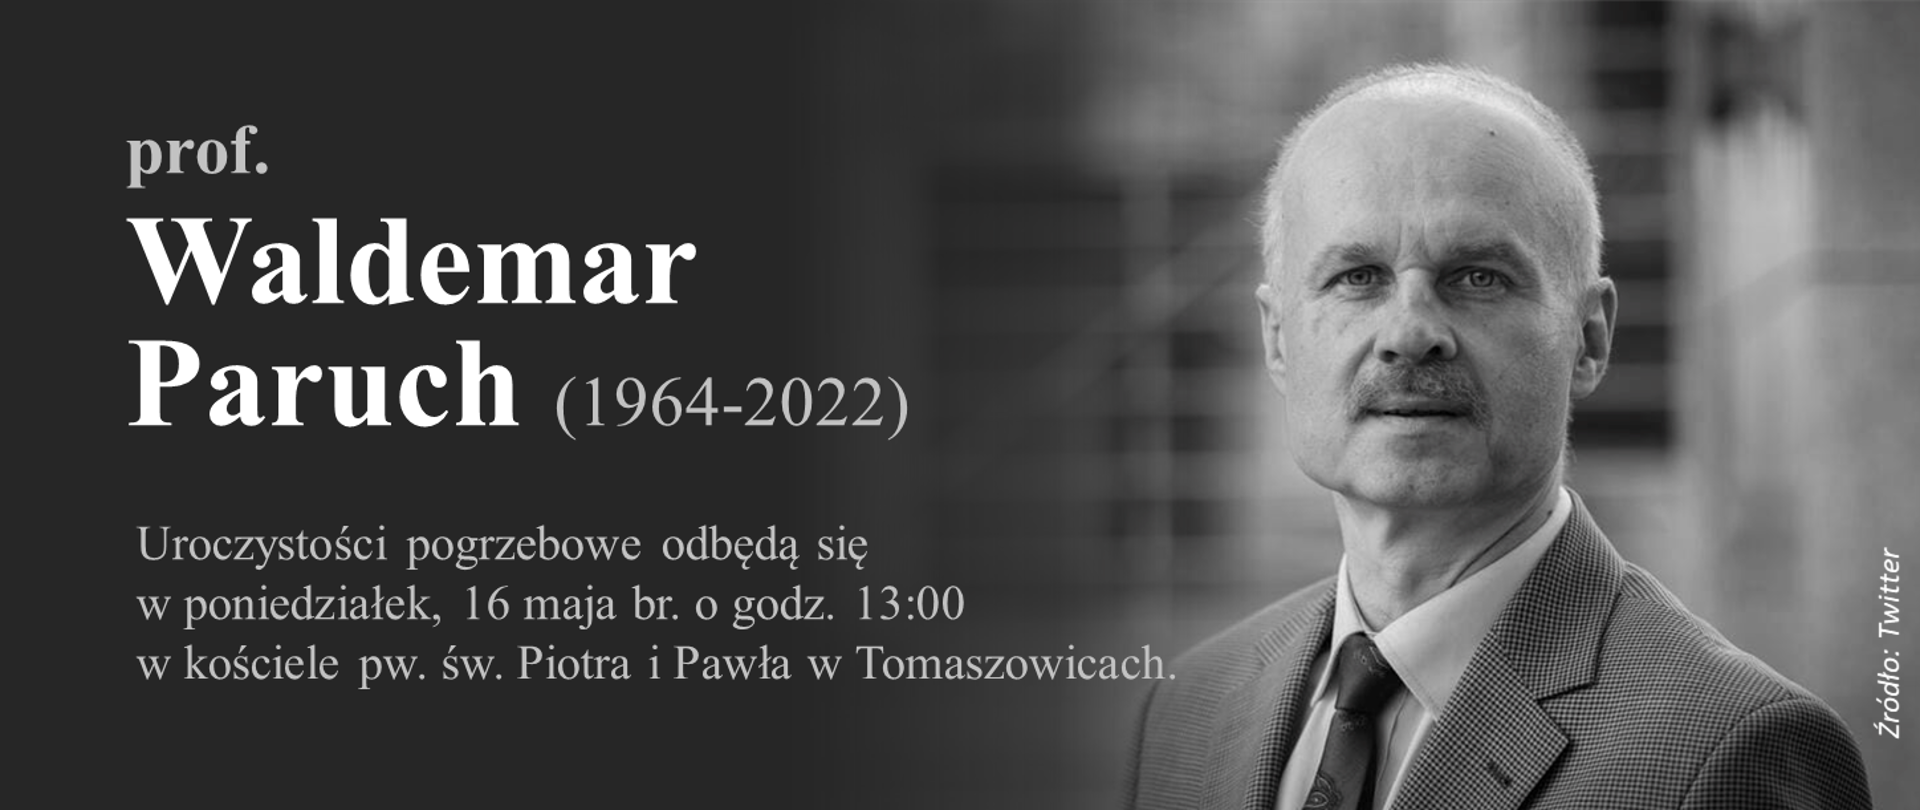 Czarno-białe zdjęcie prof. Parucha i napis prof. Waldemar Paruch (1964-2022).